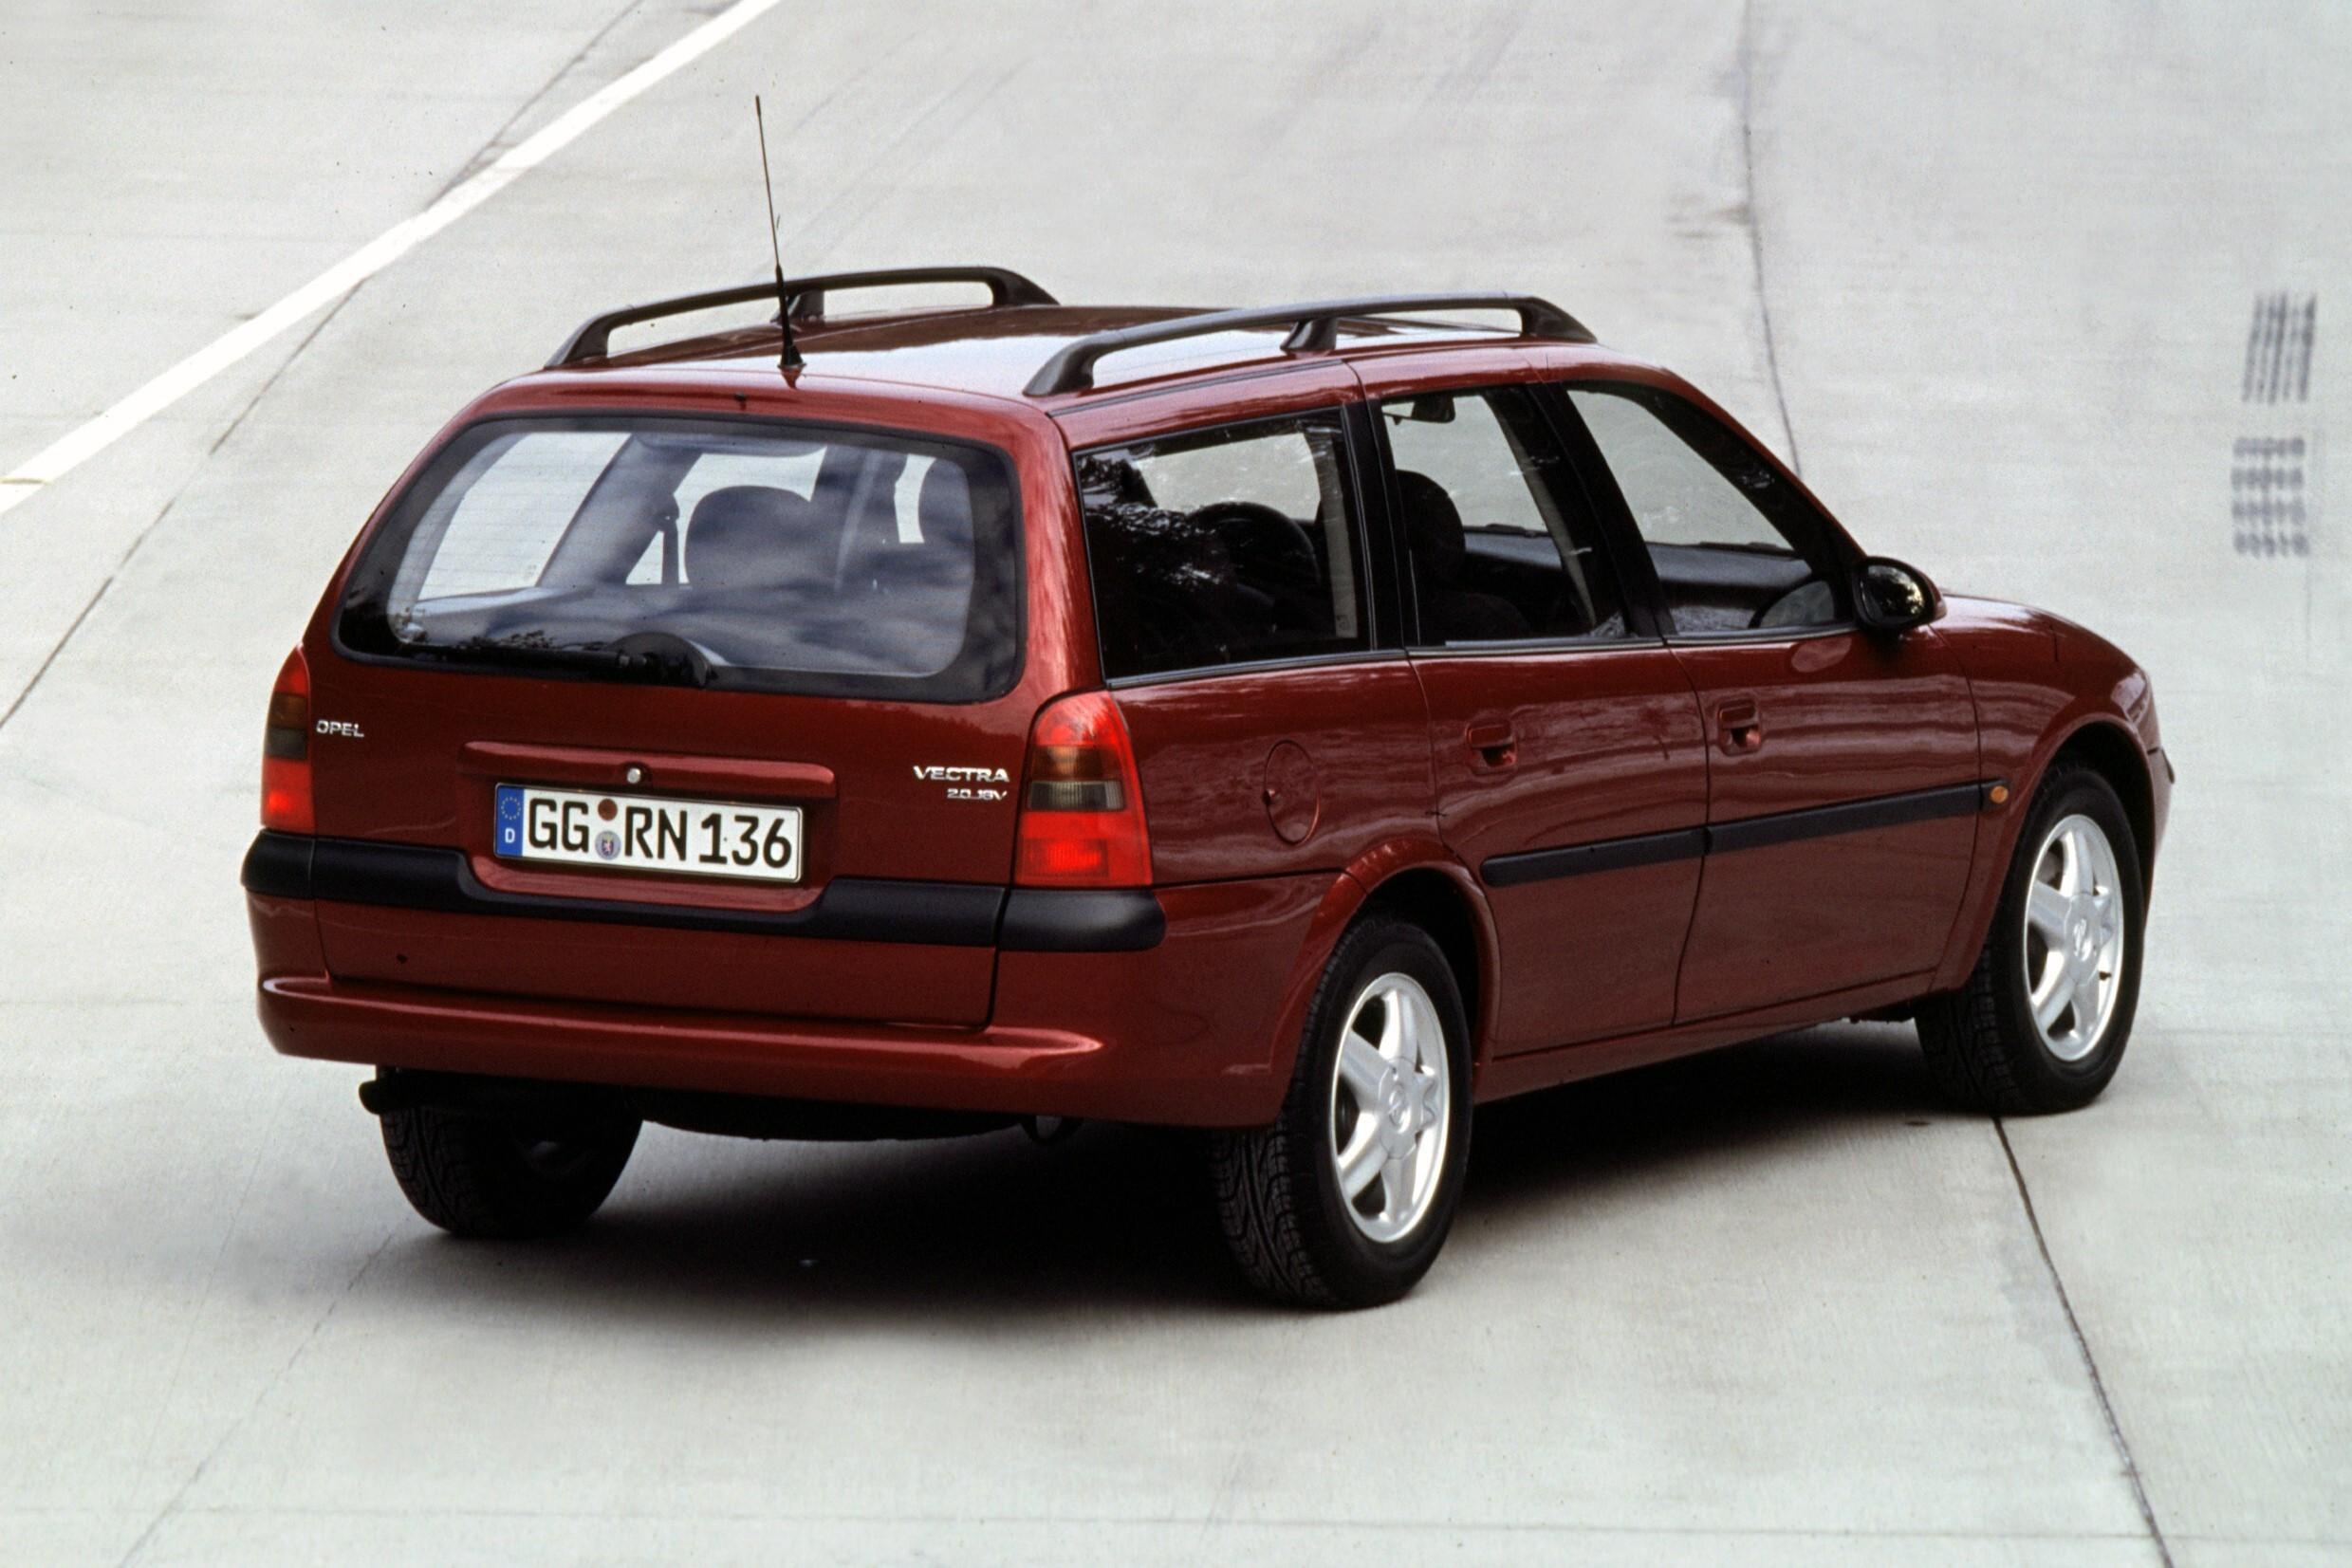 Вектра караван. Опель Вектра Караван 1998 универсал. Opel Vectra b Caravan 1998. Opel Vectra универсал 1999. Опель Вектра Караван 2000.